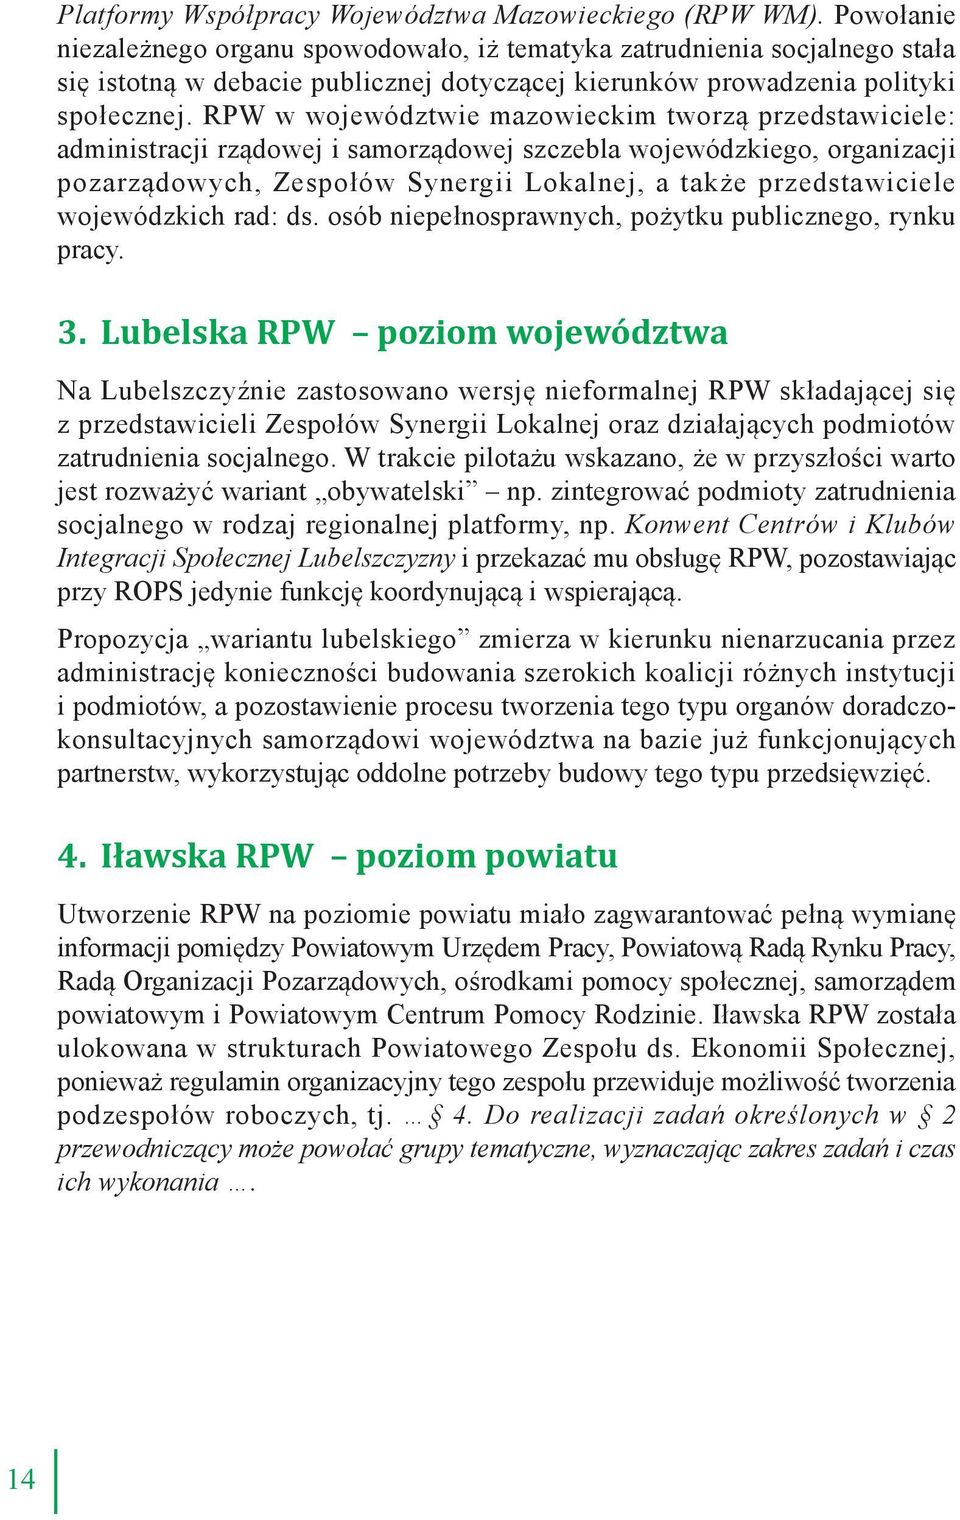 RPW w województwie mazowieckim tworzą przedstawiciele: administracji rządowej i samorządowej szczebla wojewódzkiego, organizacji pozarządowych, Zespołów Synergii Lokalnej, a także przedstawiciele